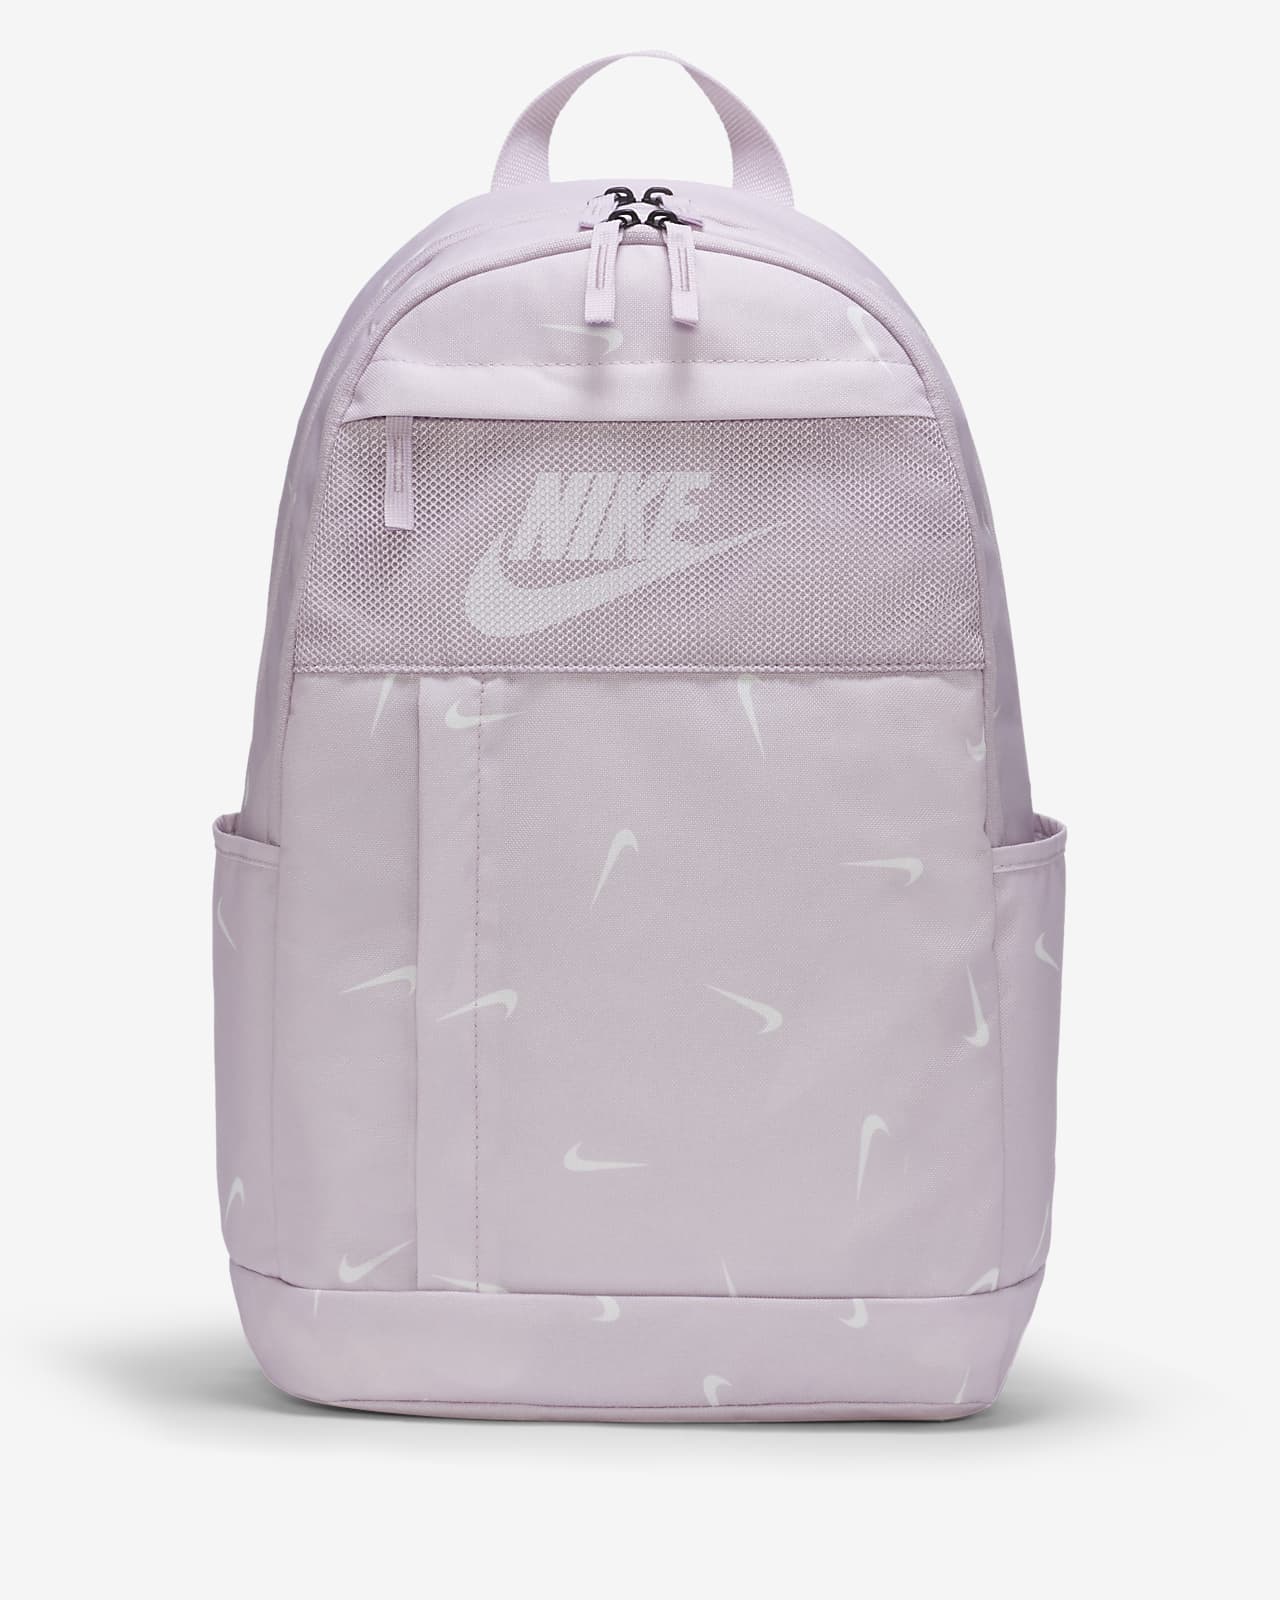 nike backpack size